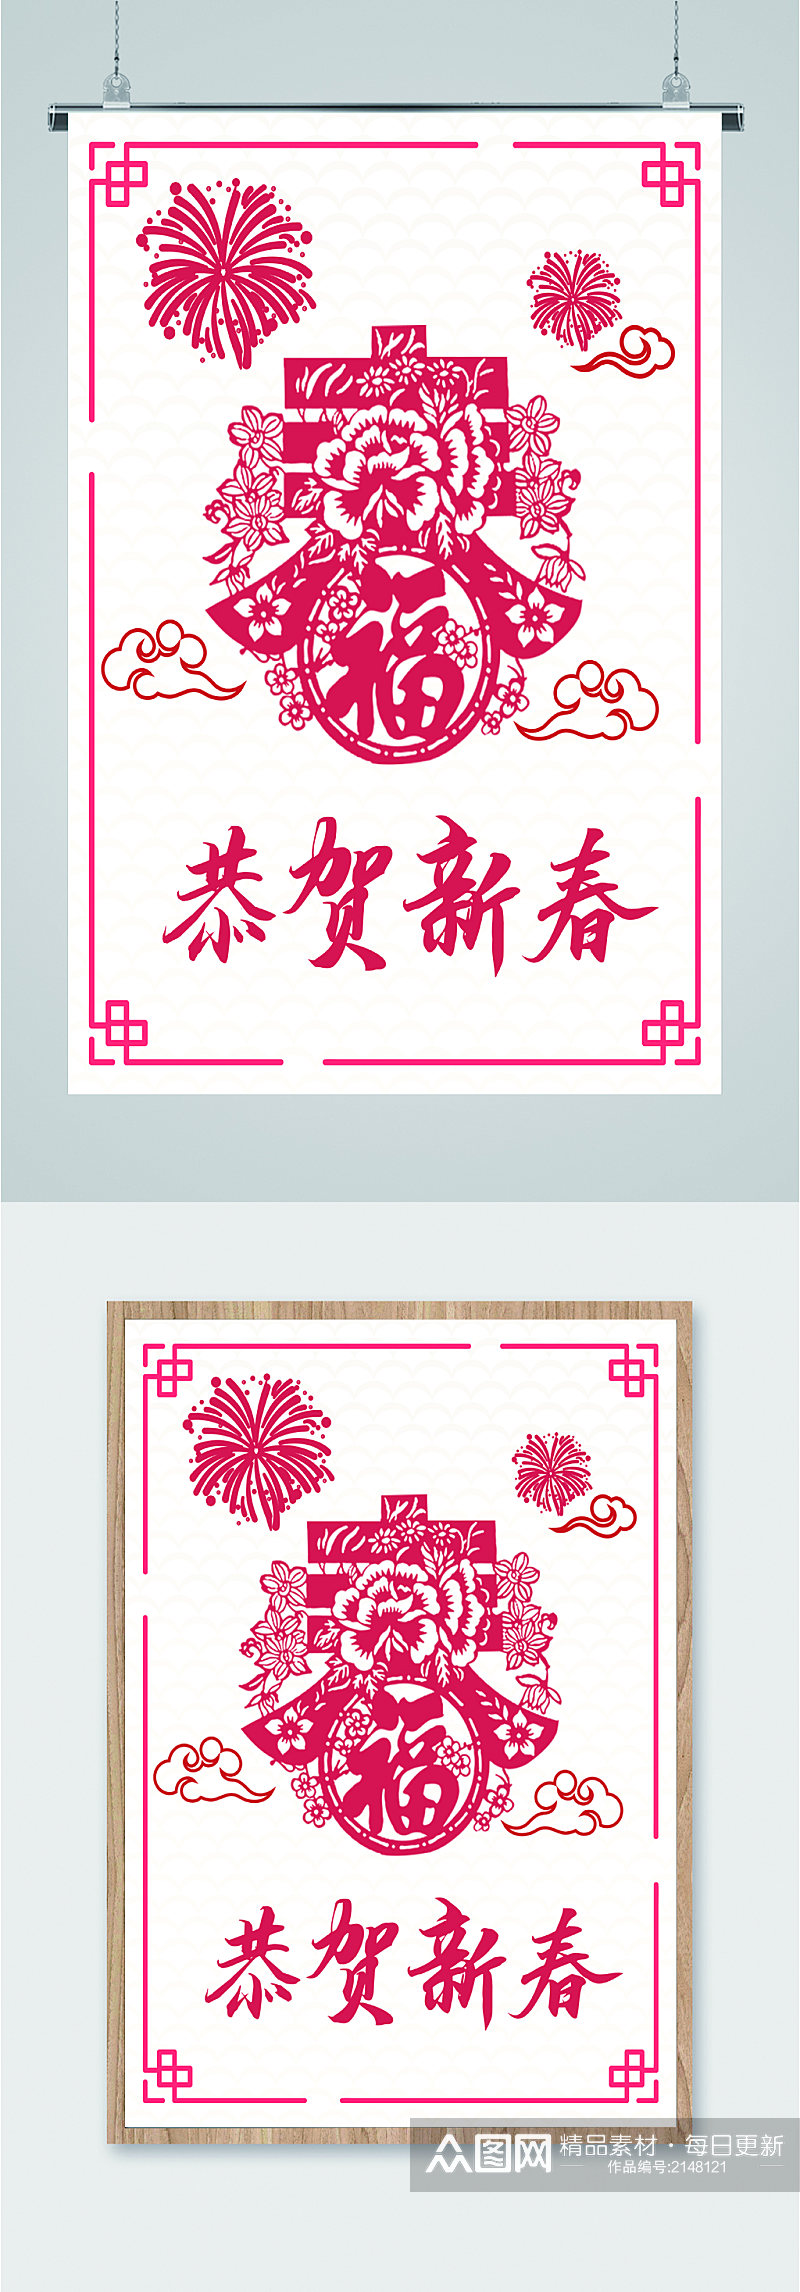 恭贺新春春节海报素材